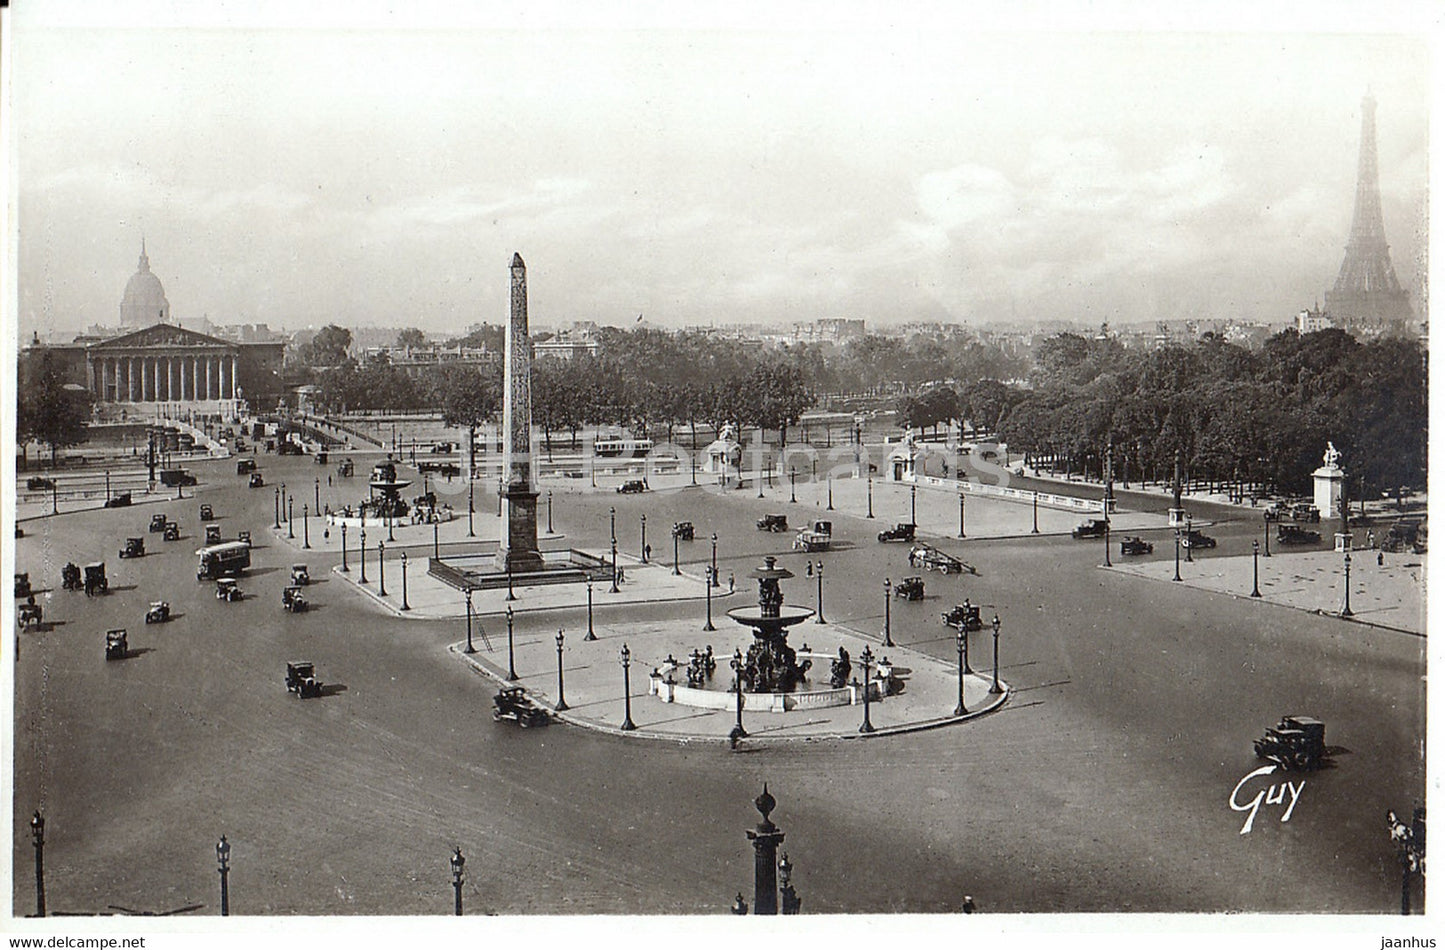 Paris et ses Merveilles - Place de la Concorde - old postcard - France - unused - JH Postcards